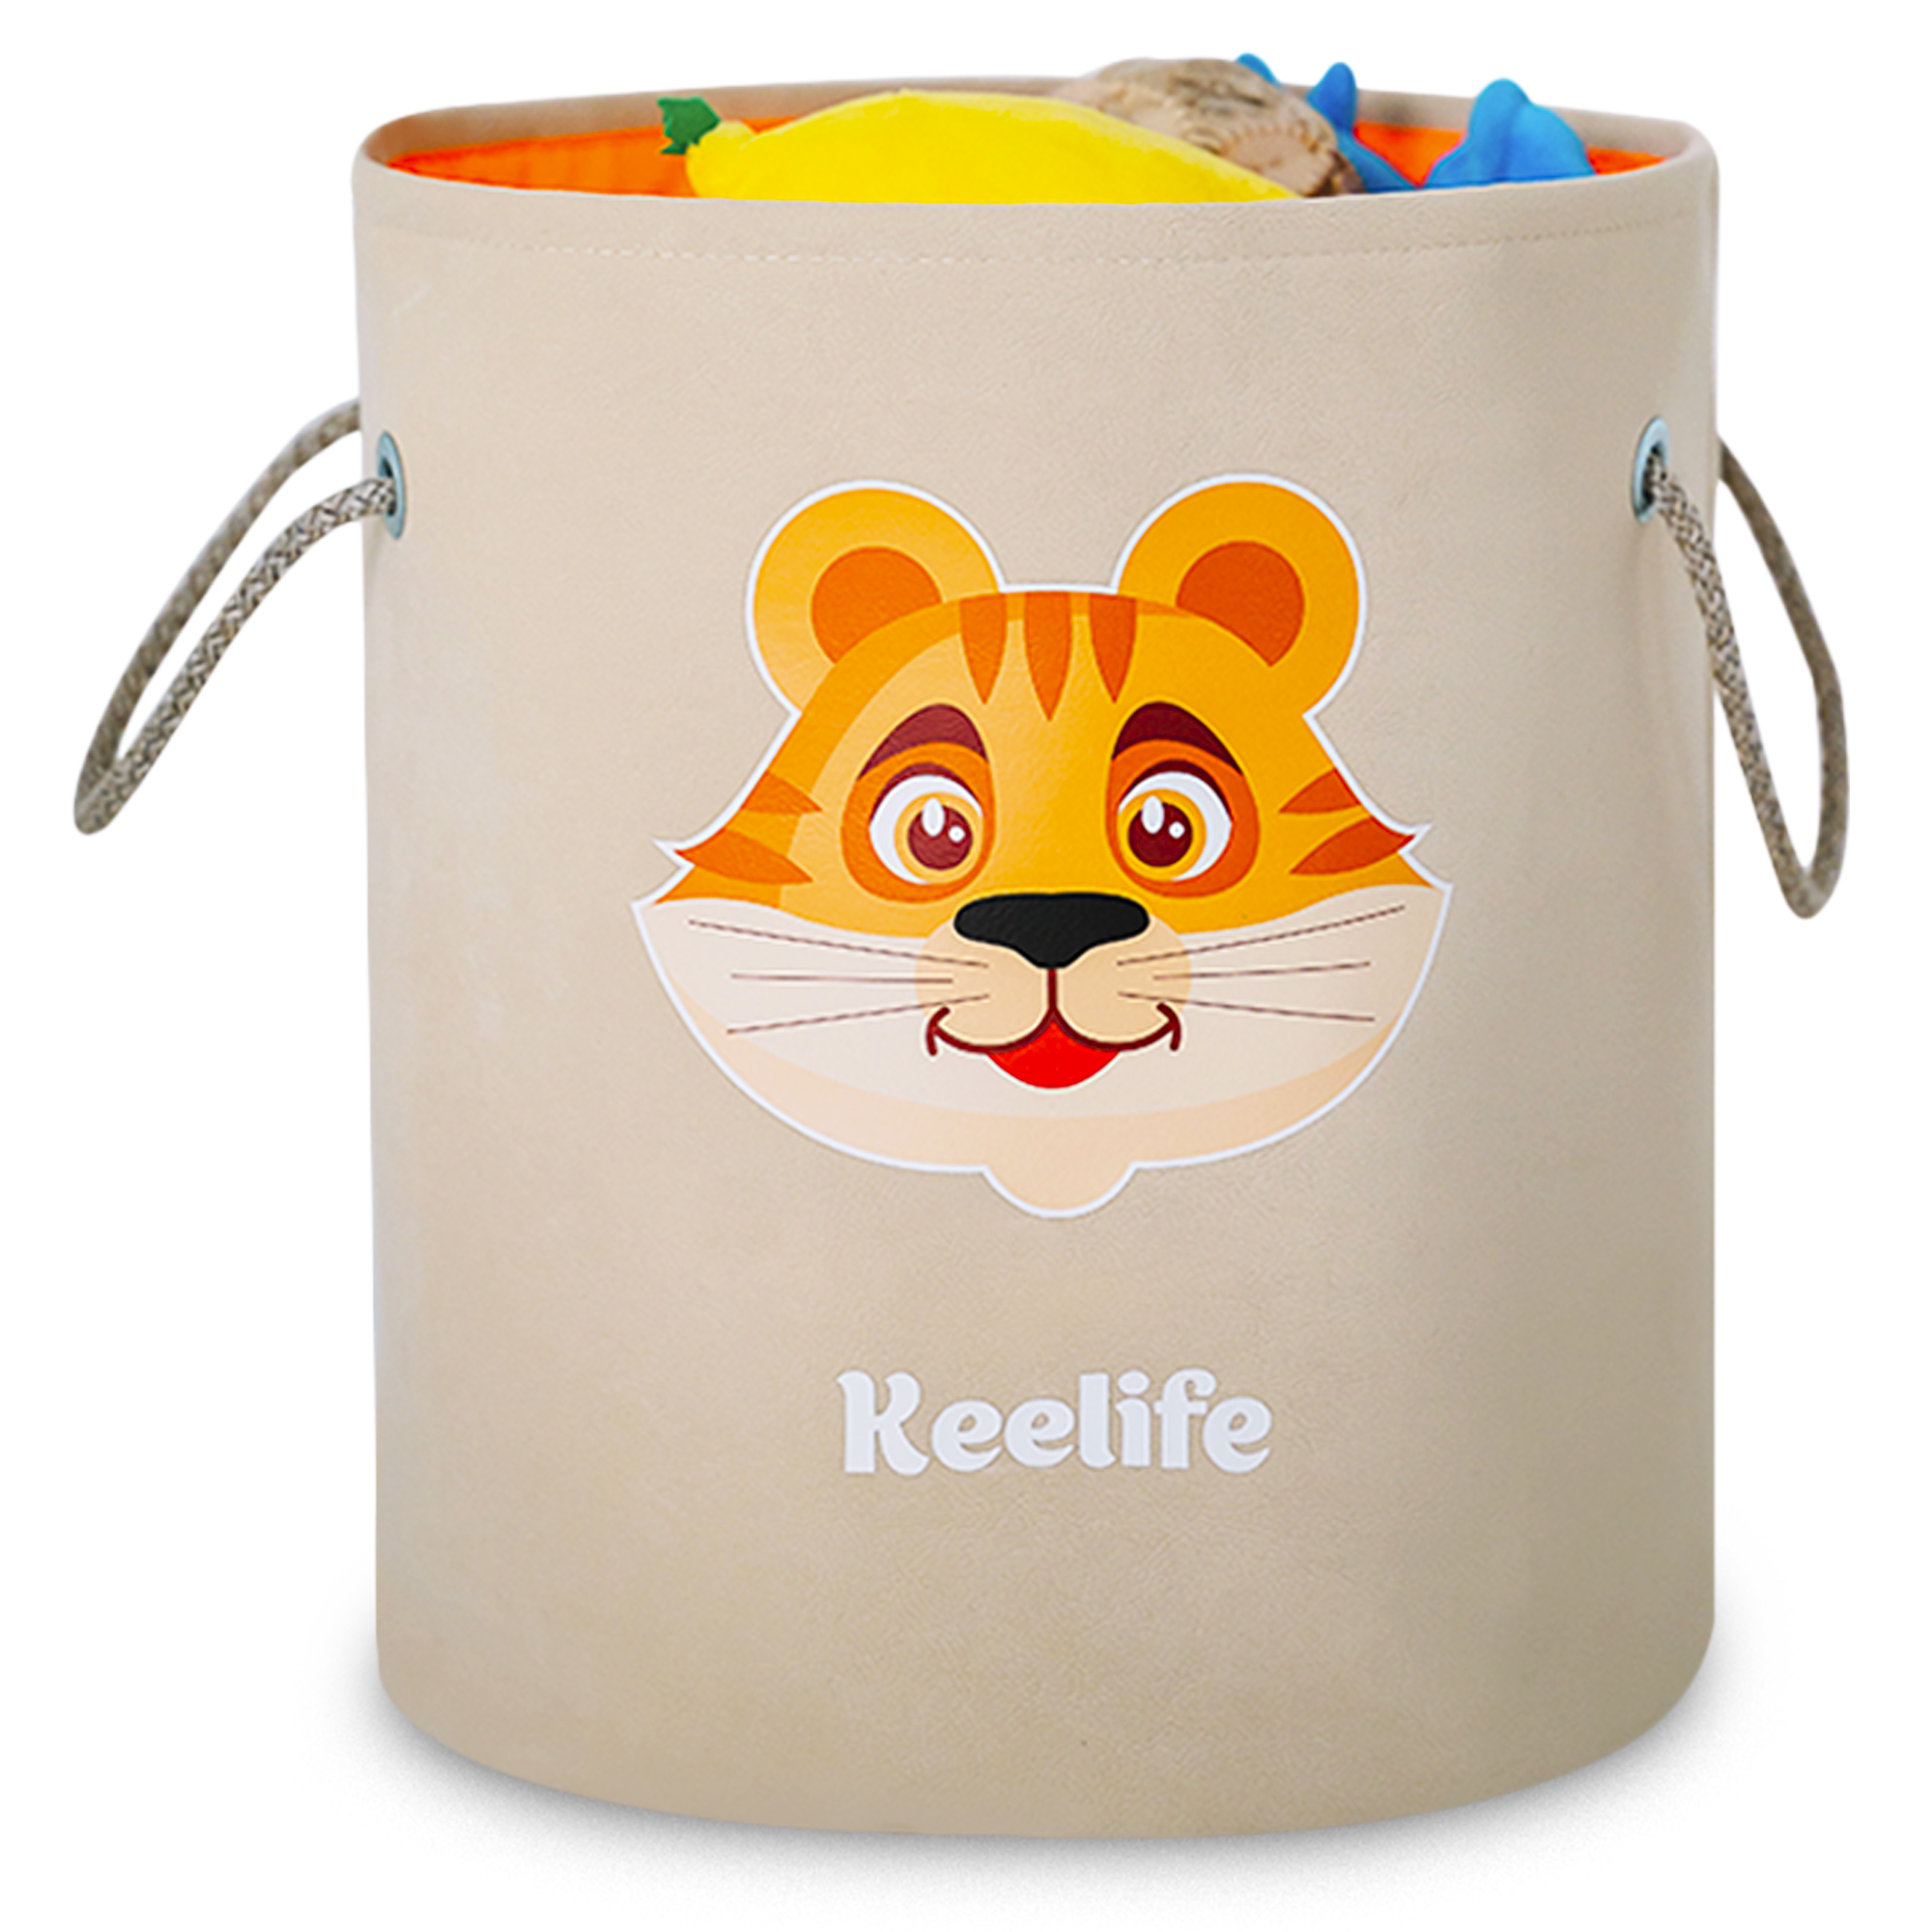 Корзина для игрушек Keelife органайзер для хранения Тигренок бежевый-оранжевый - фото 1